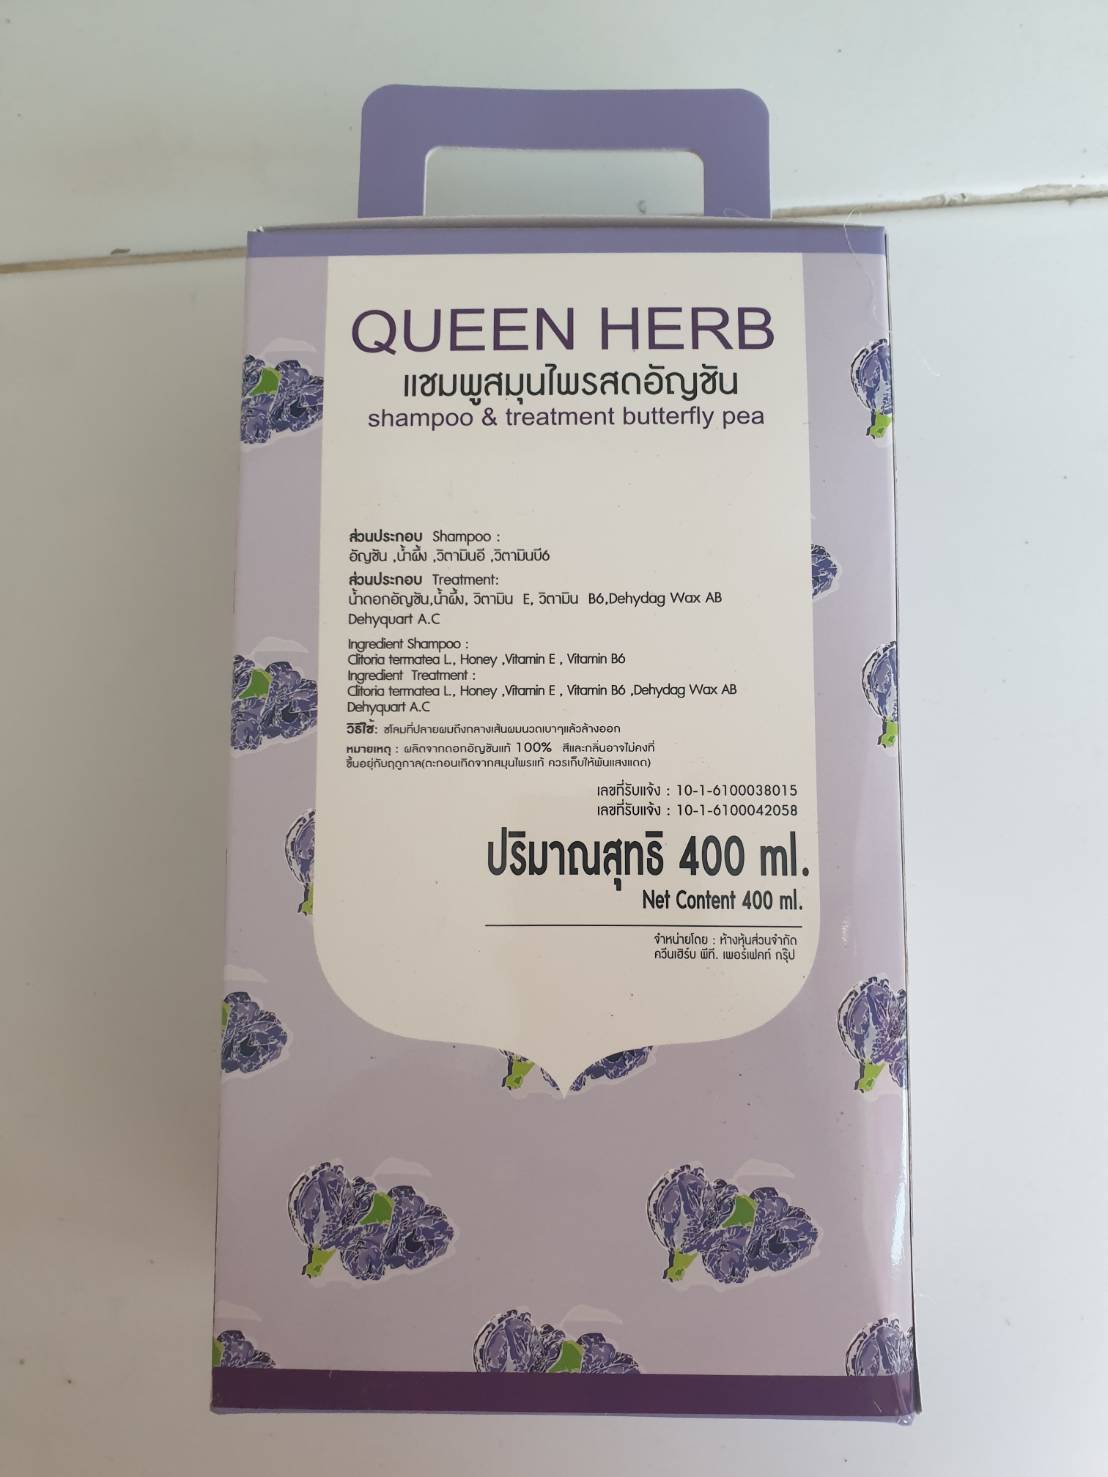 ( แพ็คคู่ )Queen Herb แชมพูสมุนไพรอัญชัน ควีนเฮิร์บ + ครีมนวดผม ยาสระผมอัญชัน 1เซ็ท 400 ml.